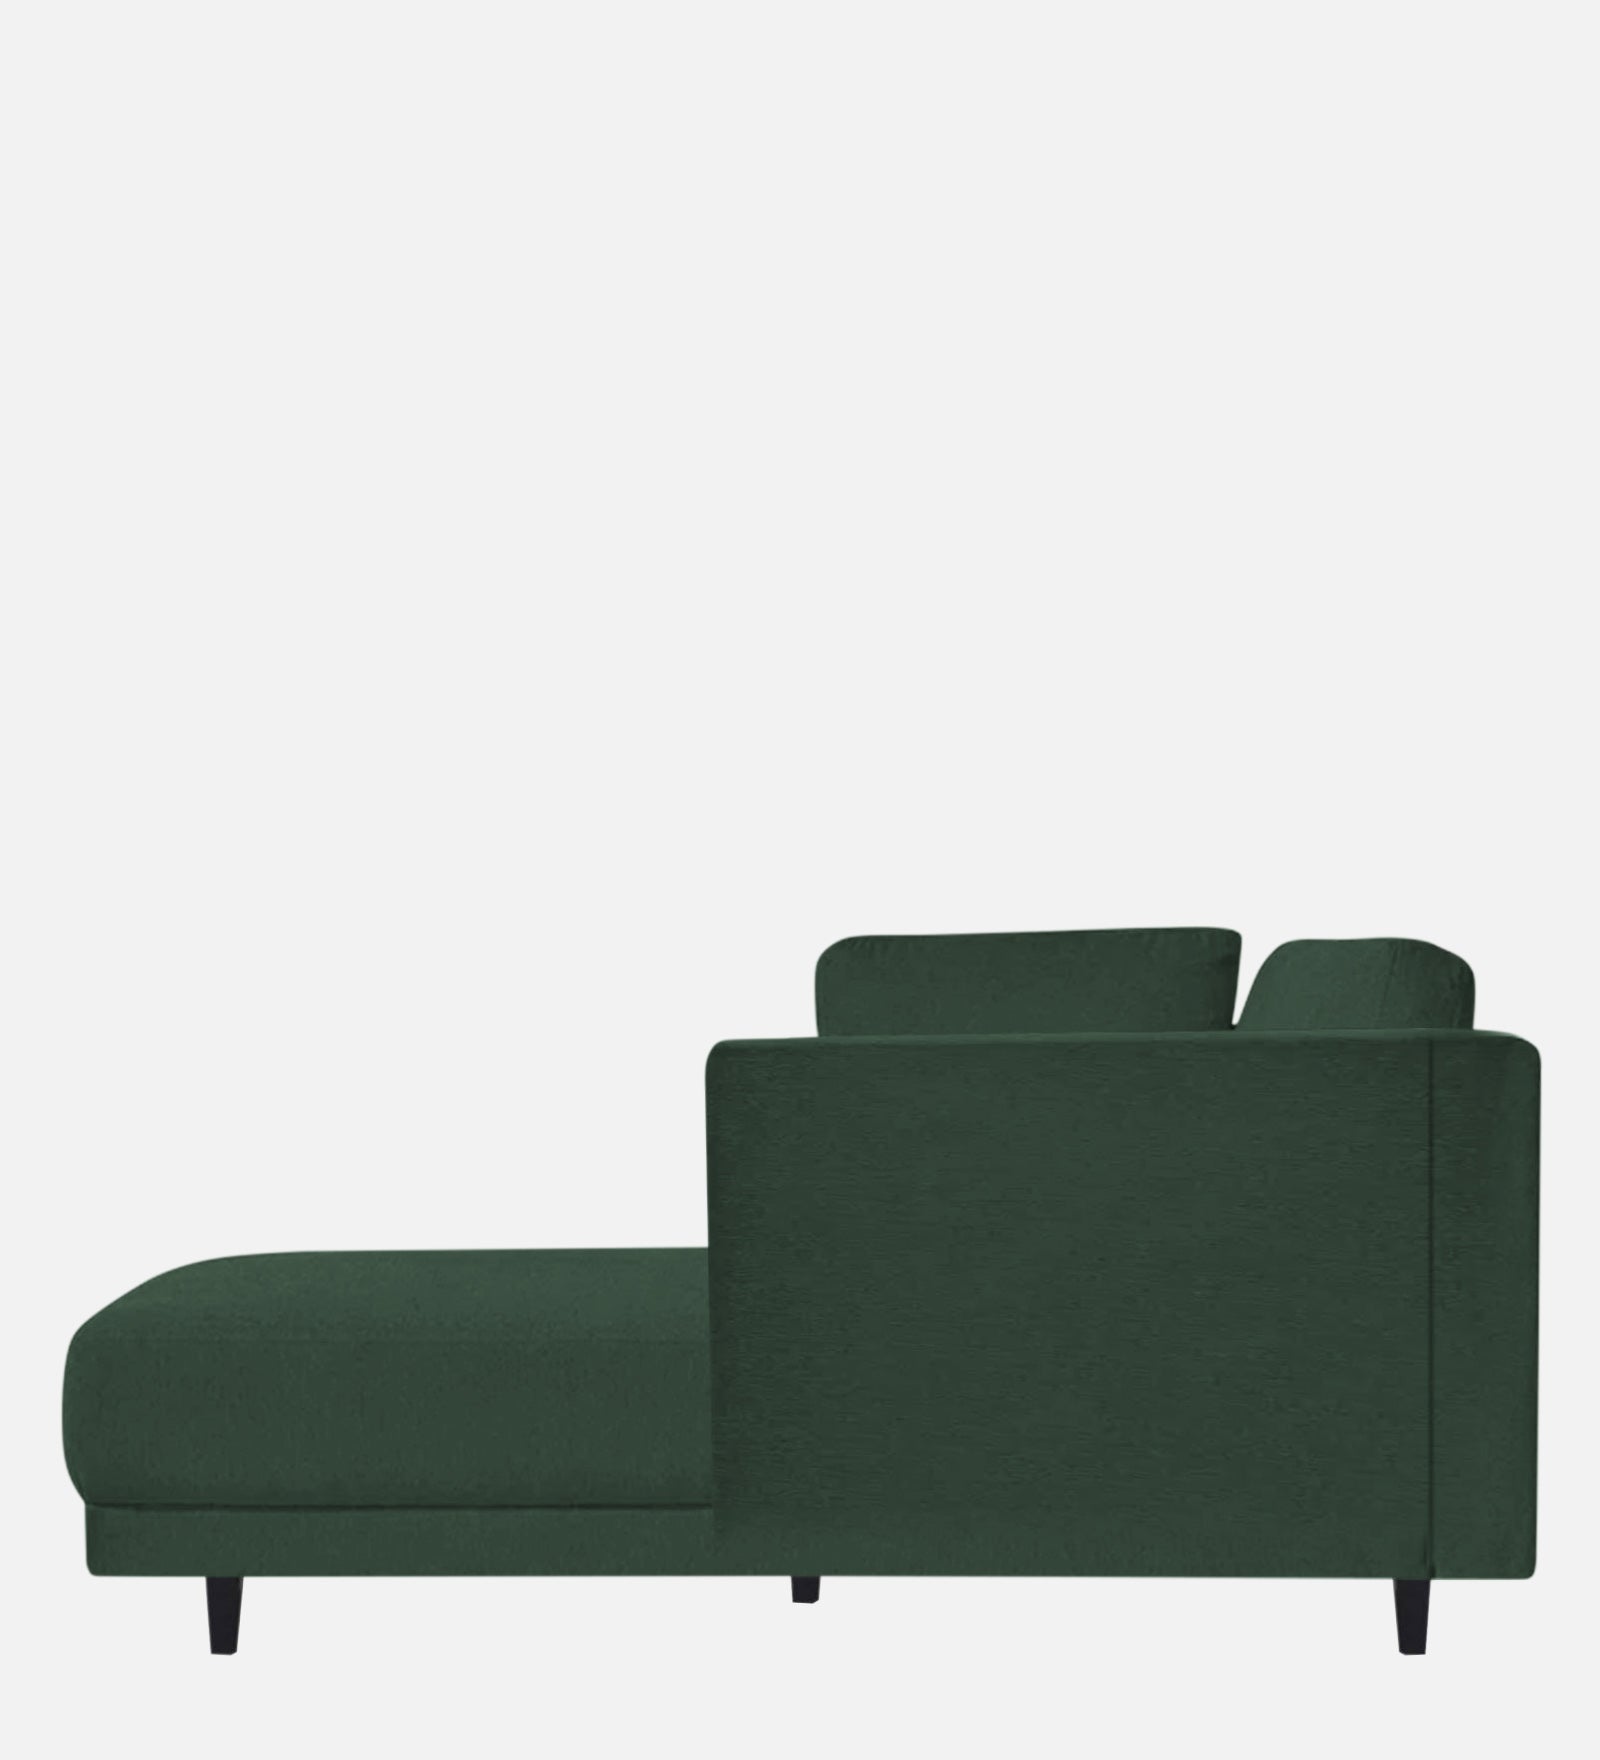 Jonze Velvet RHS Chaise Lounger in Amazon Green Colour